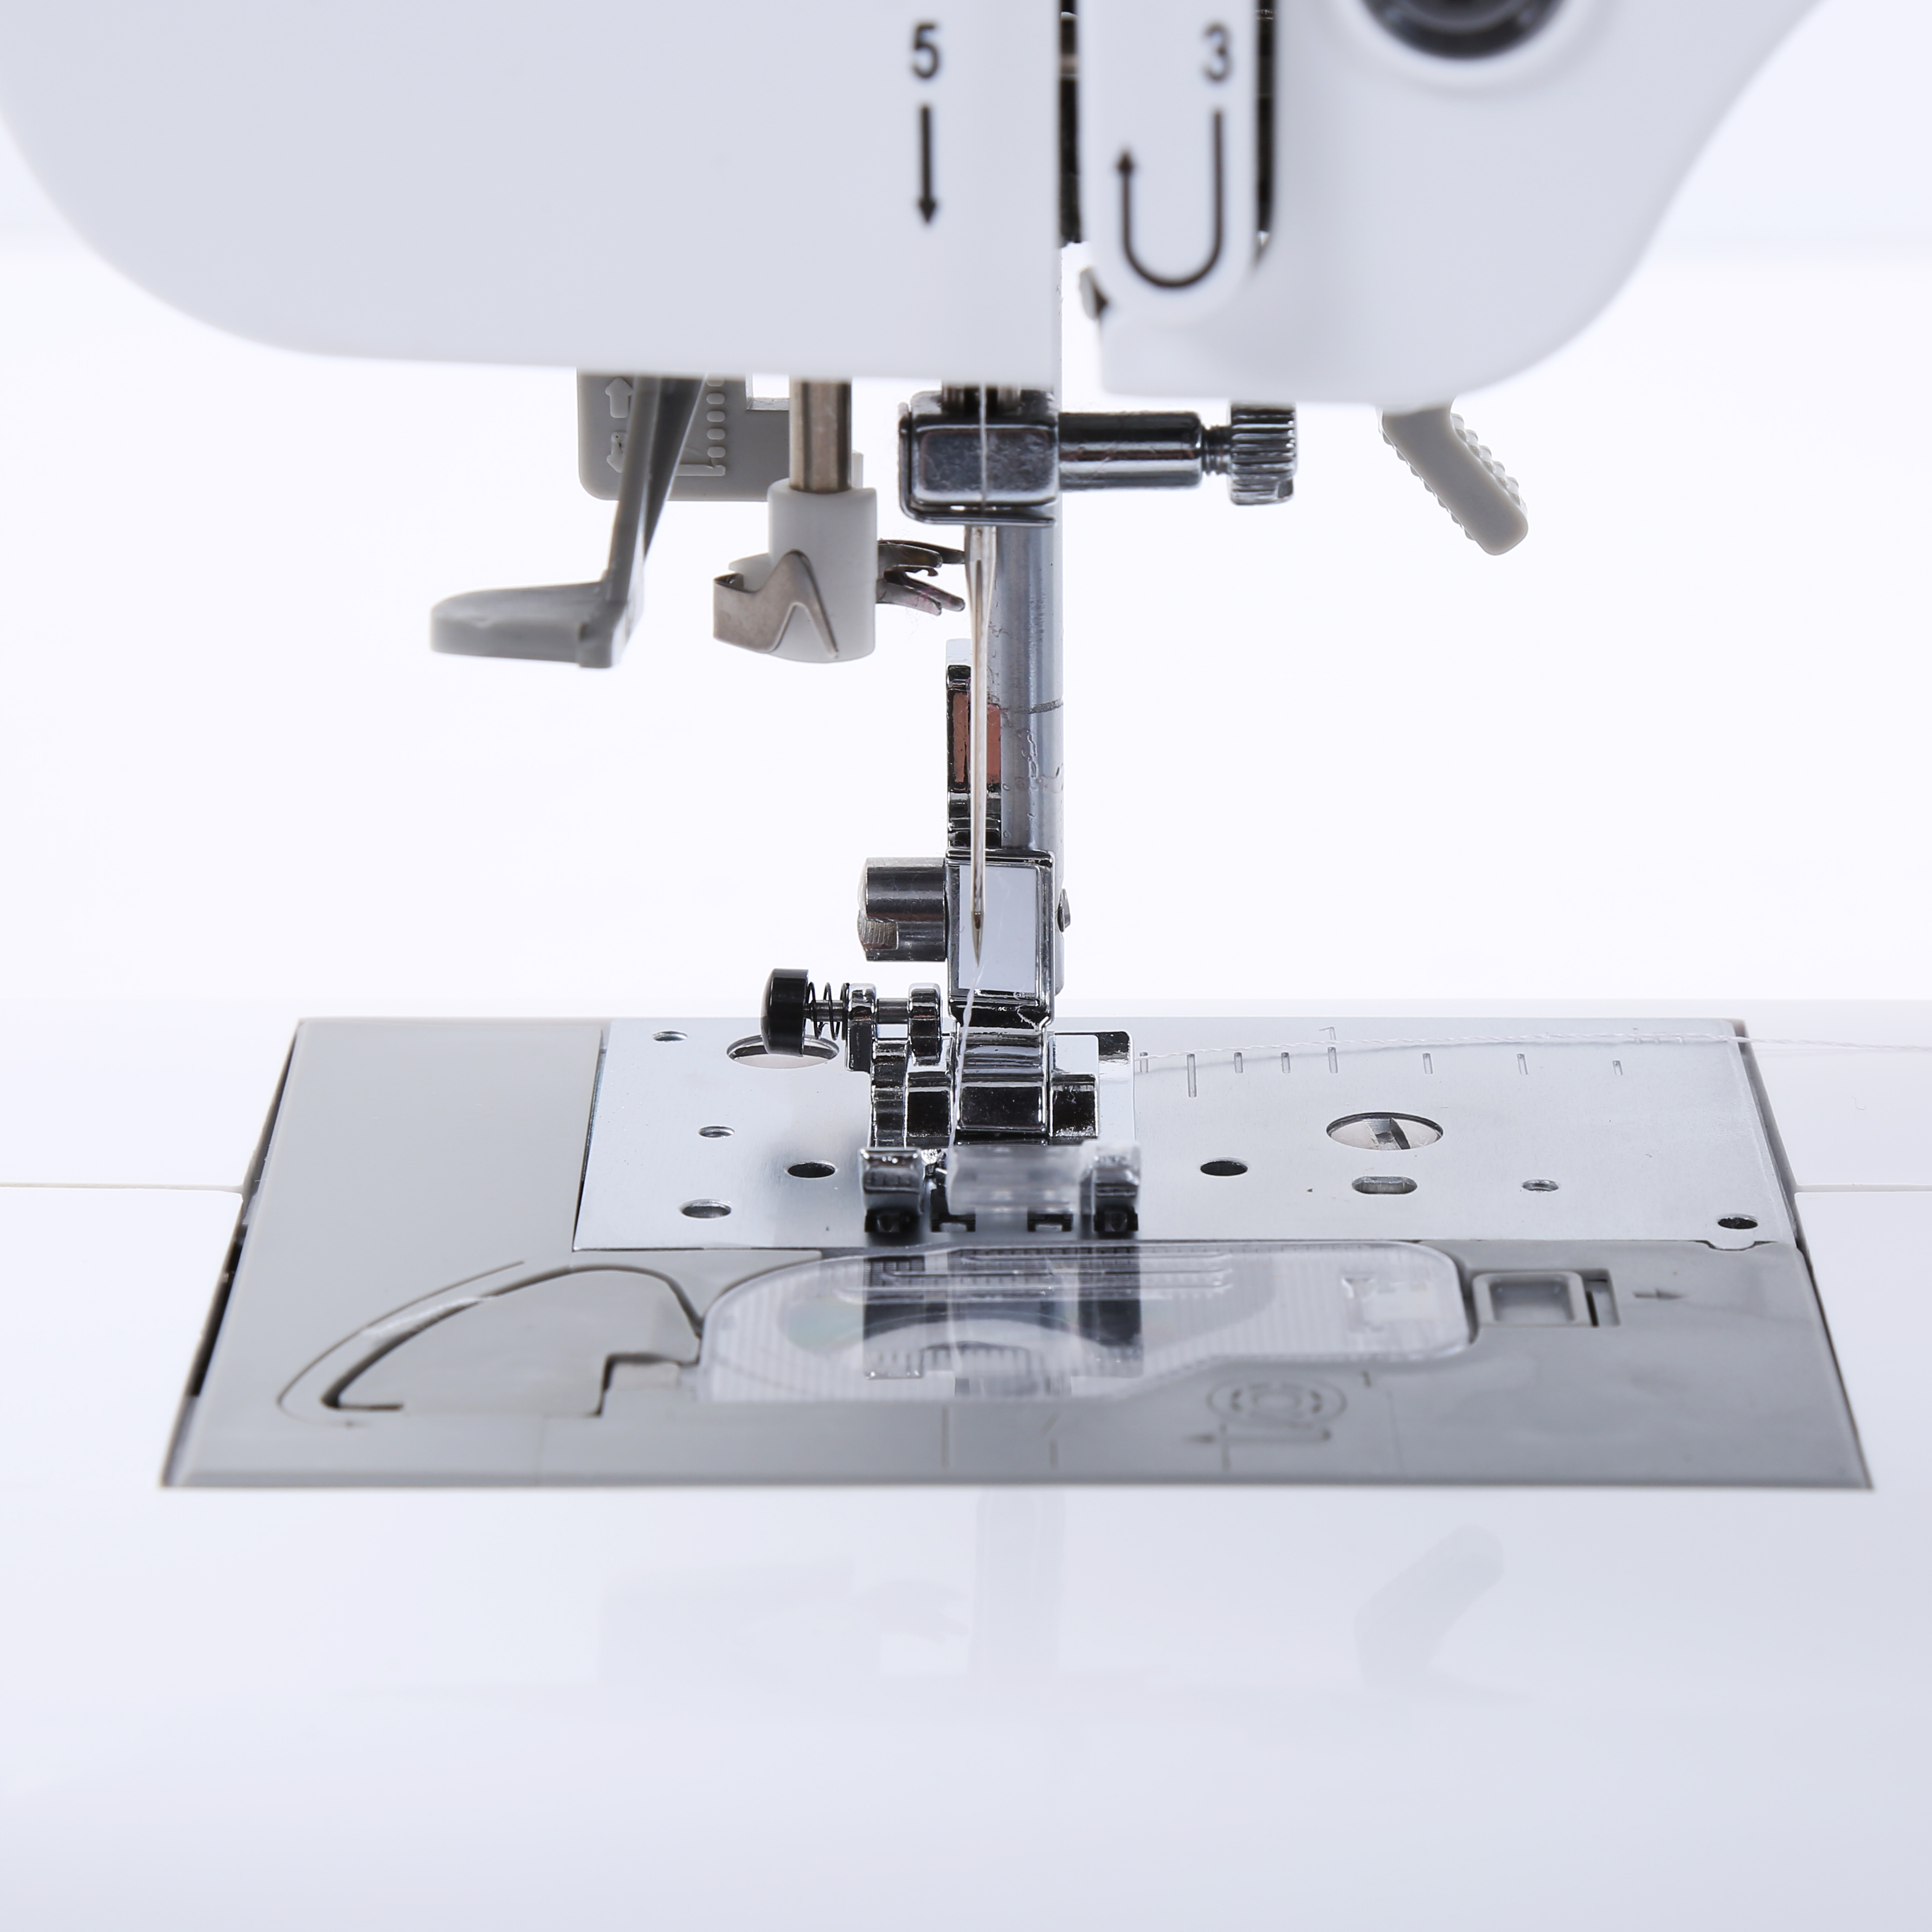 Bai бытовой швейной машины AnySew Multi-Function для автоматического